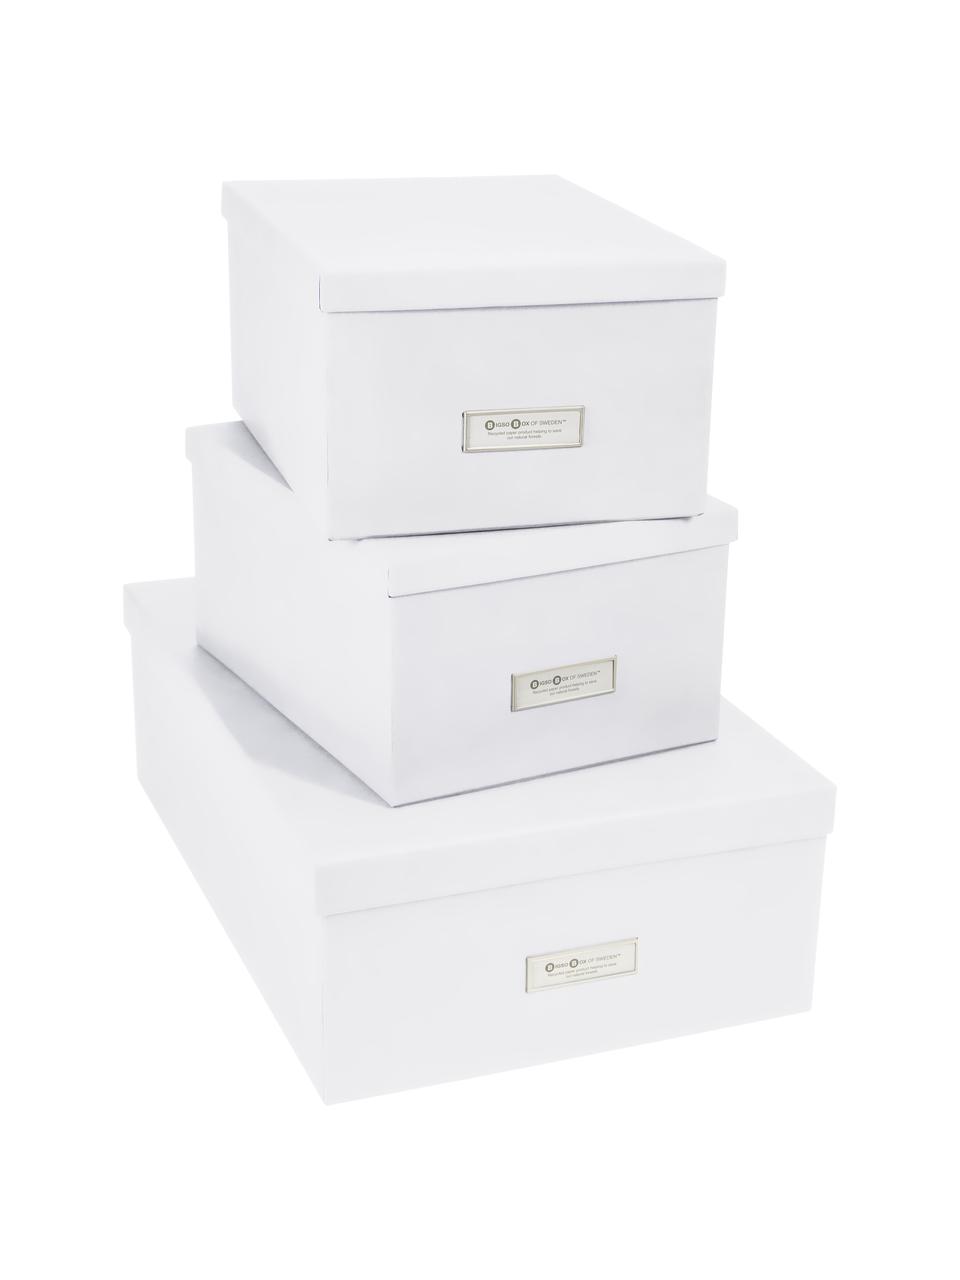 Set de cajas Inge, 3 pzas., Caja: cartón laminado, Blanco, Set de diferentes tamaños